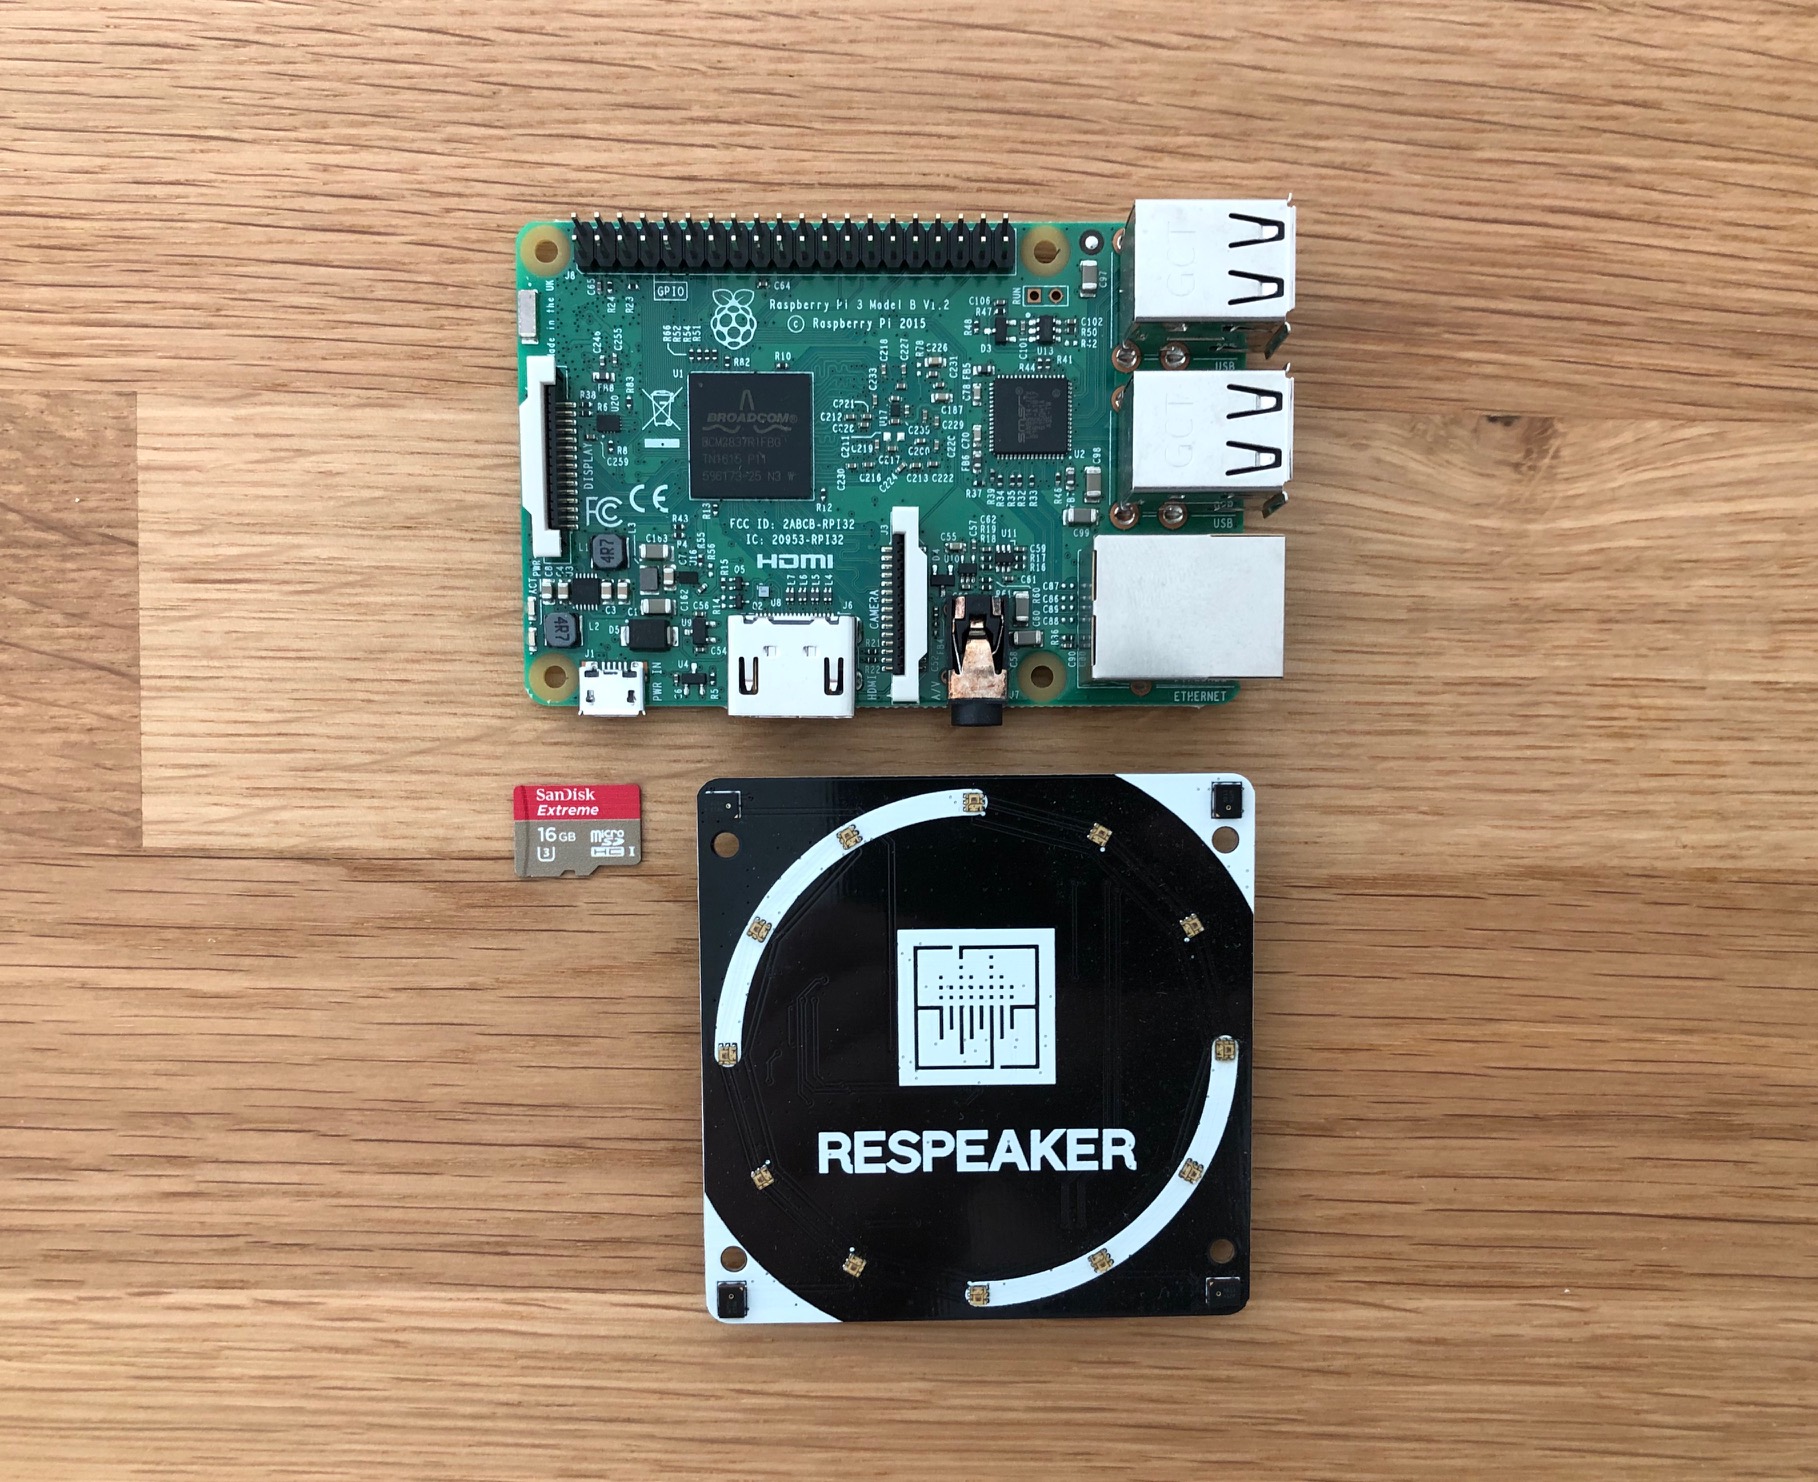 The setup: Raspberry Pi 3 + ReSpeaker